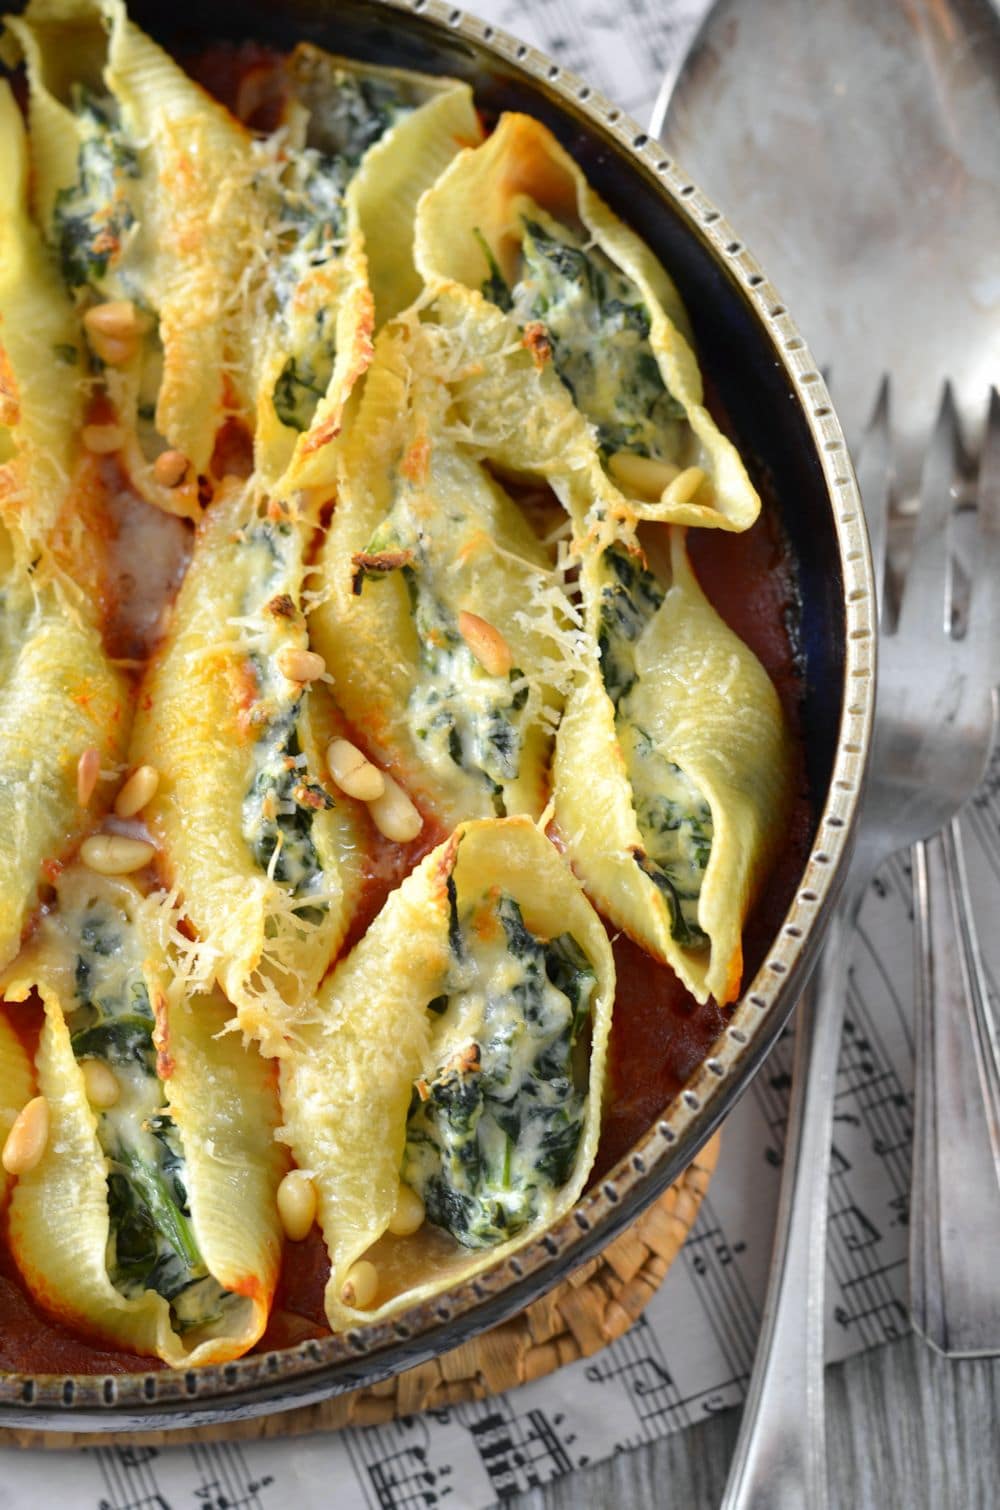 Conchiglioni pasta stuffed with ricotta and spinach